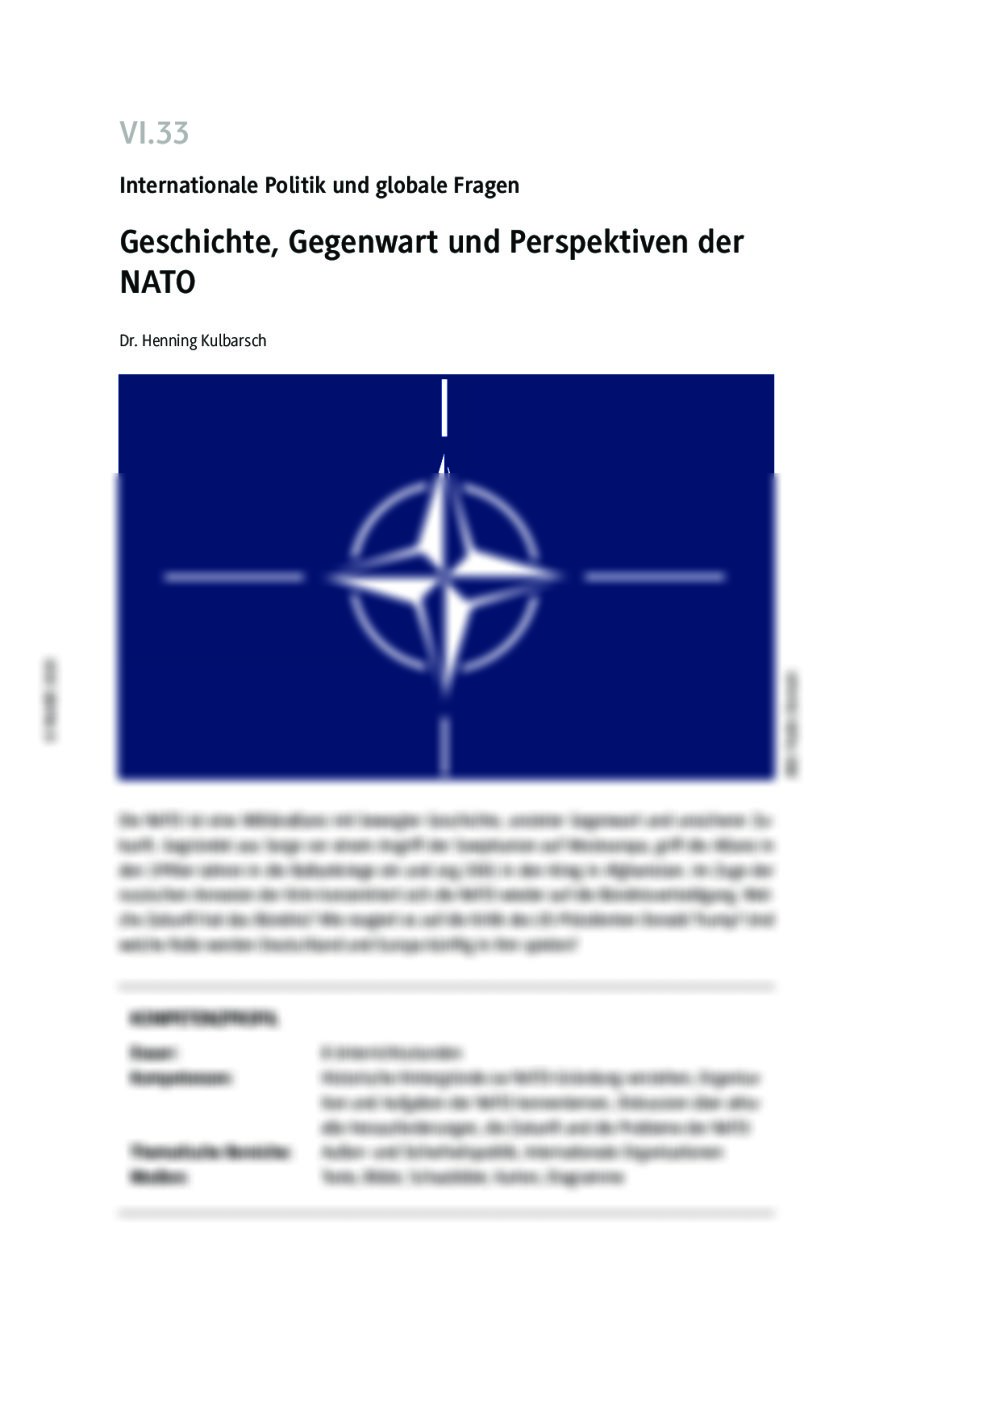 Geschichte, Gegenwart und Perspektiven der NATO - Seite 1